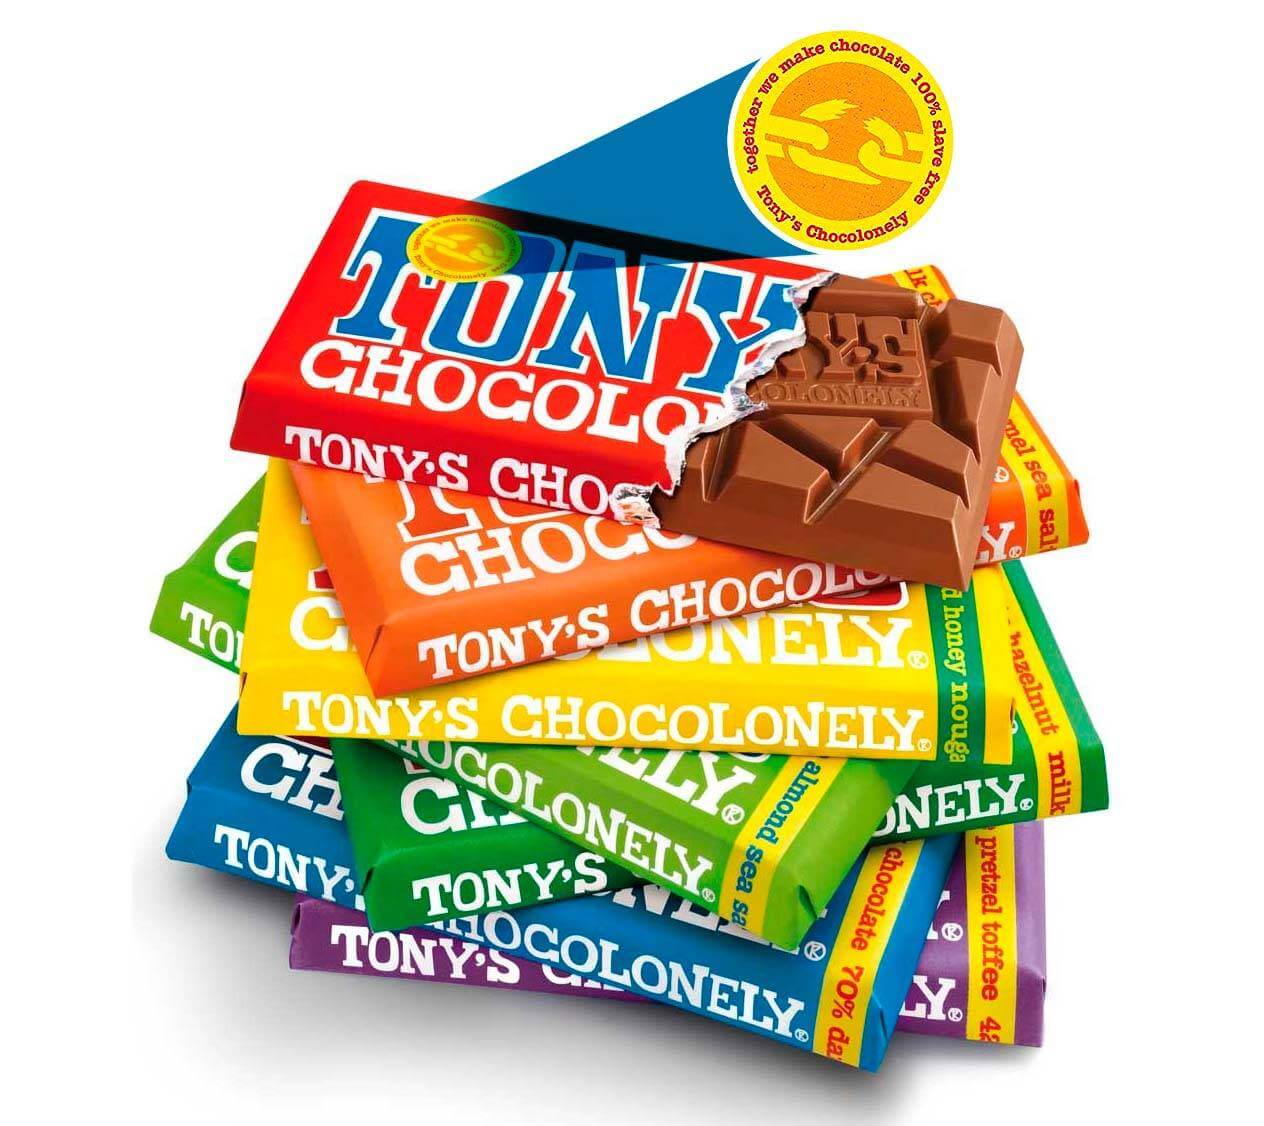 escravidão na indústria do chocolate – Tony's Chocolonely